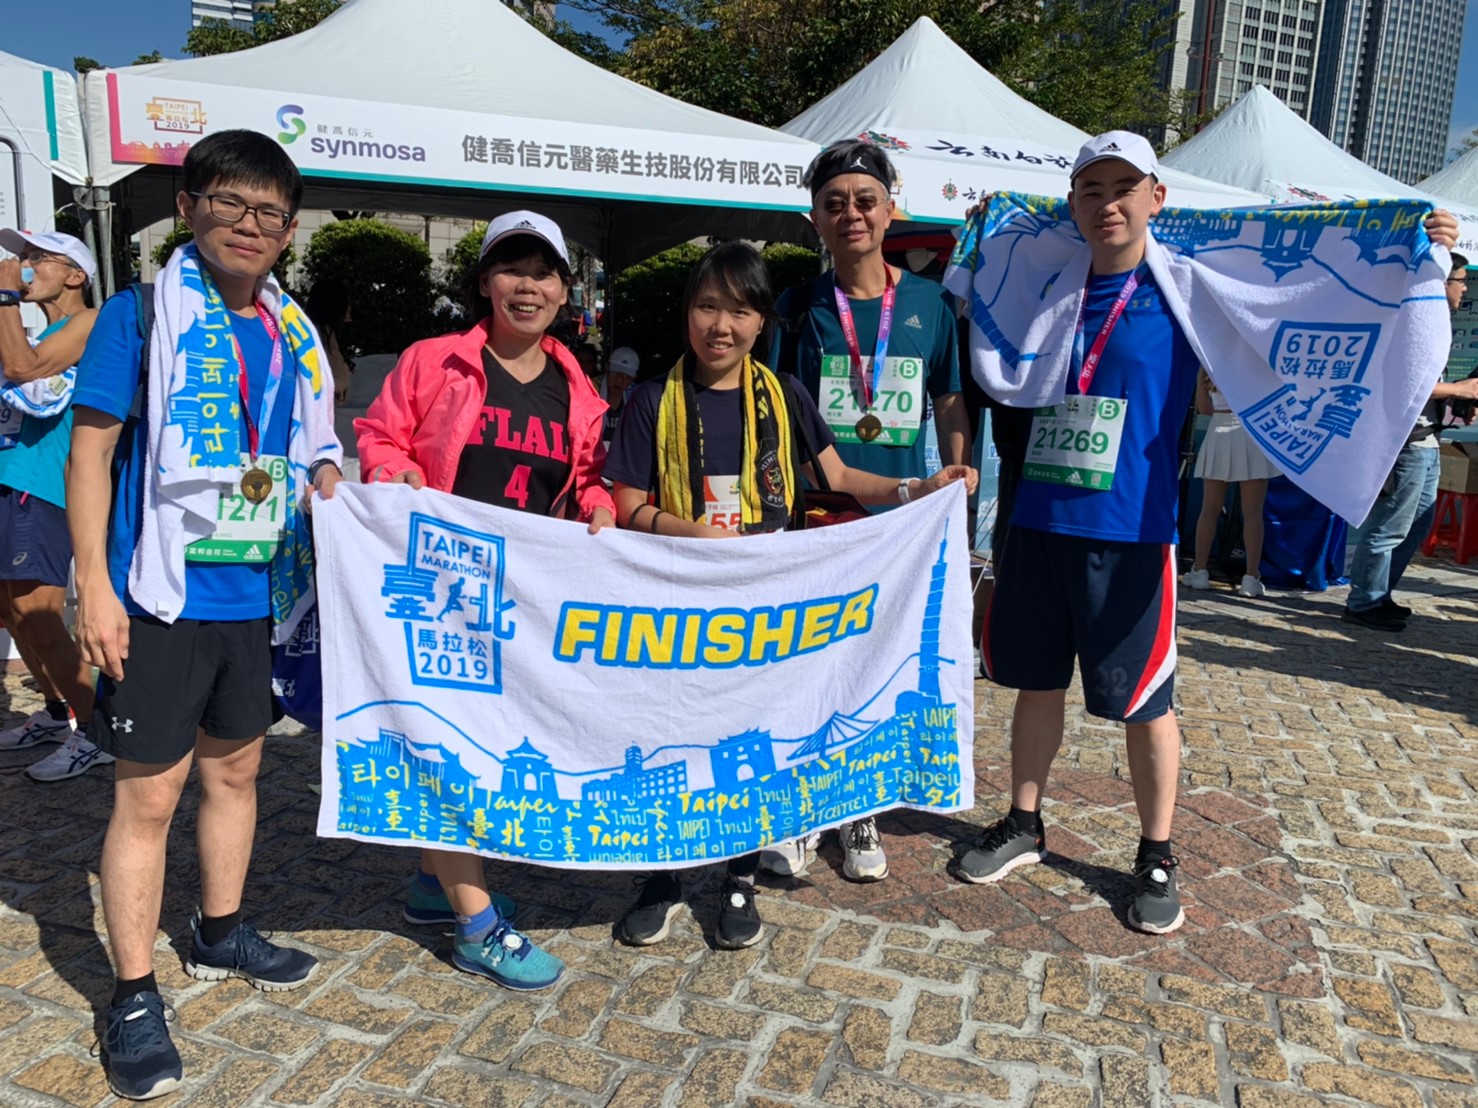 圖片說明-輸出入銀行同仁積極參與核心客戶「健喬集團」贊助之2019台北國際馬拉松路跑活動